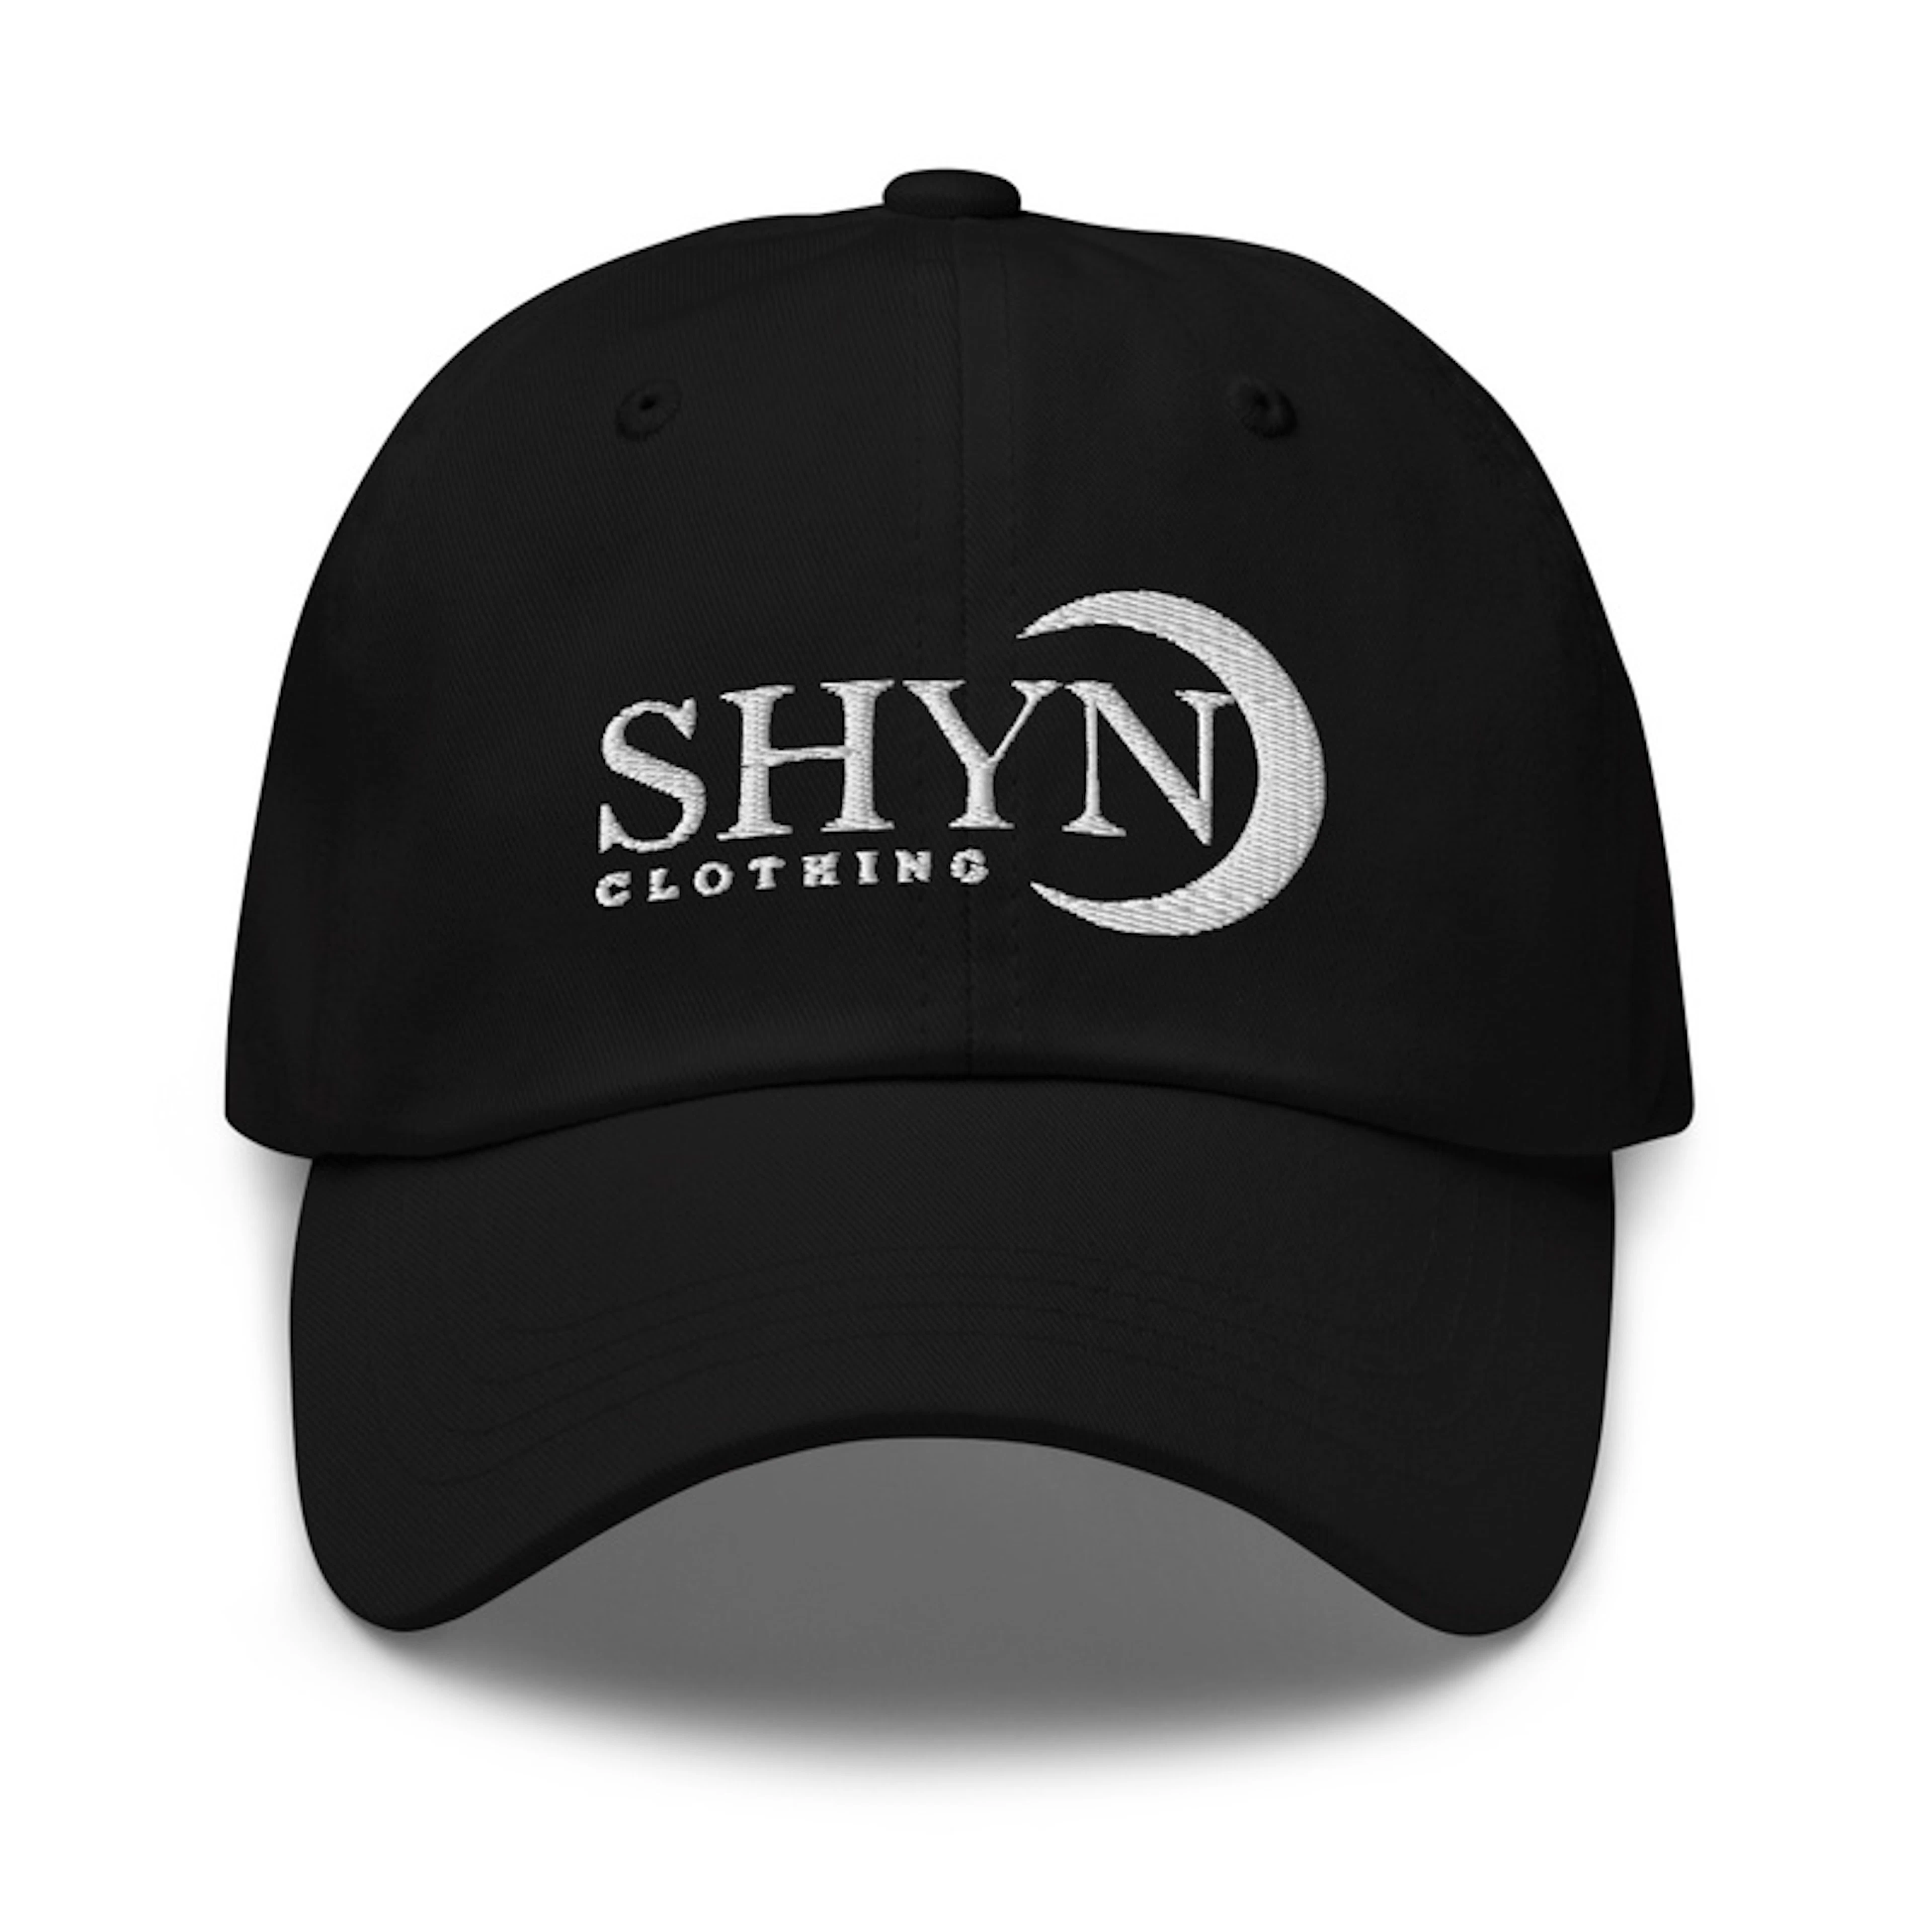 Shyn Clothing Dad Hats